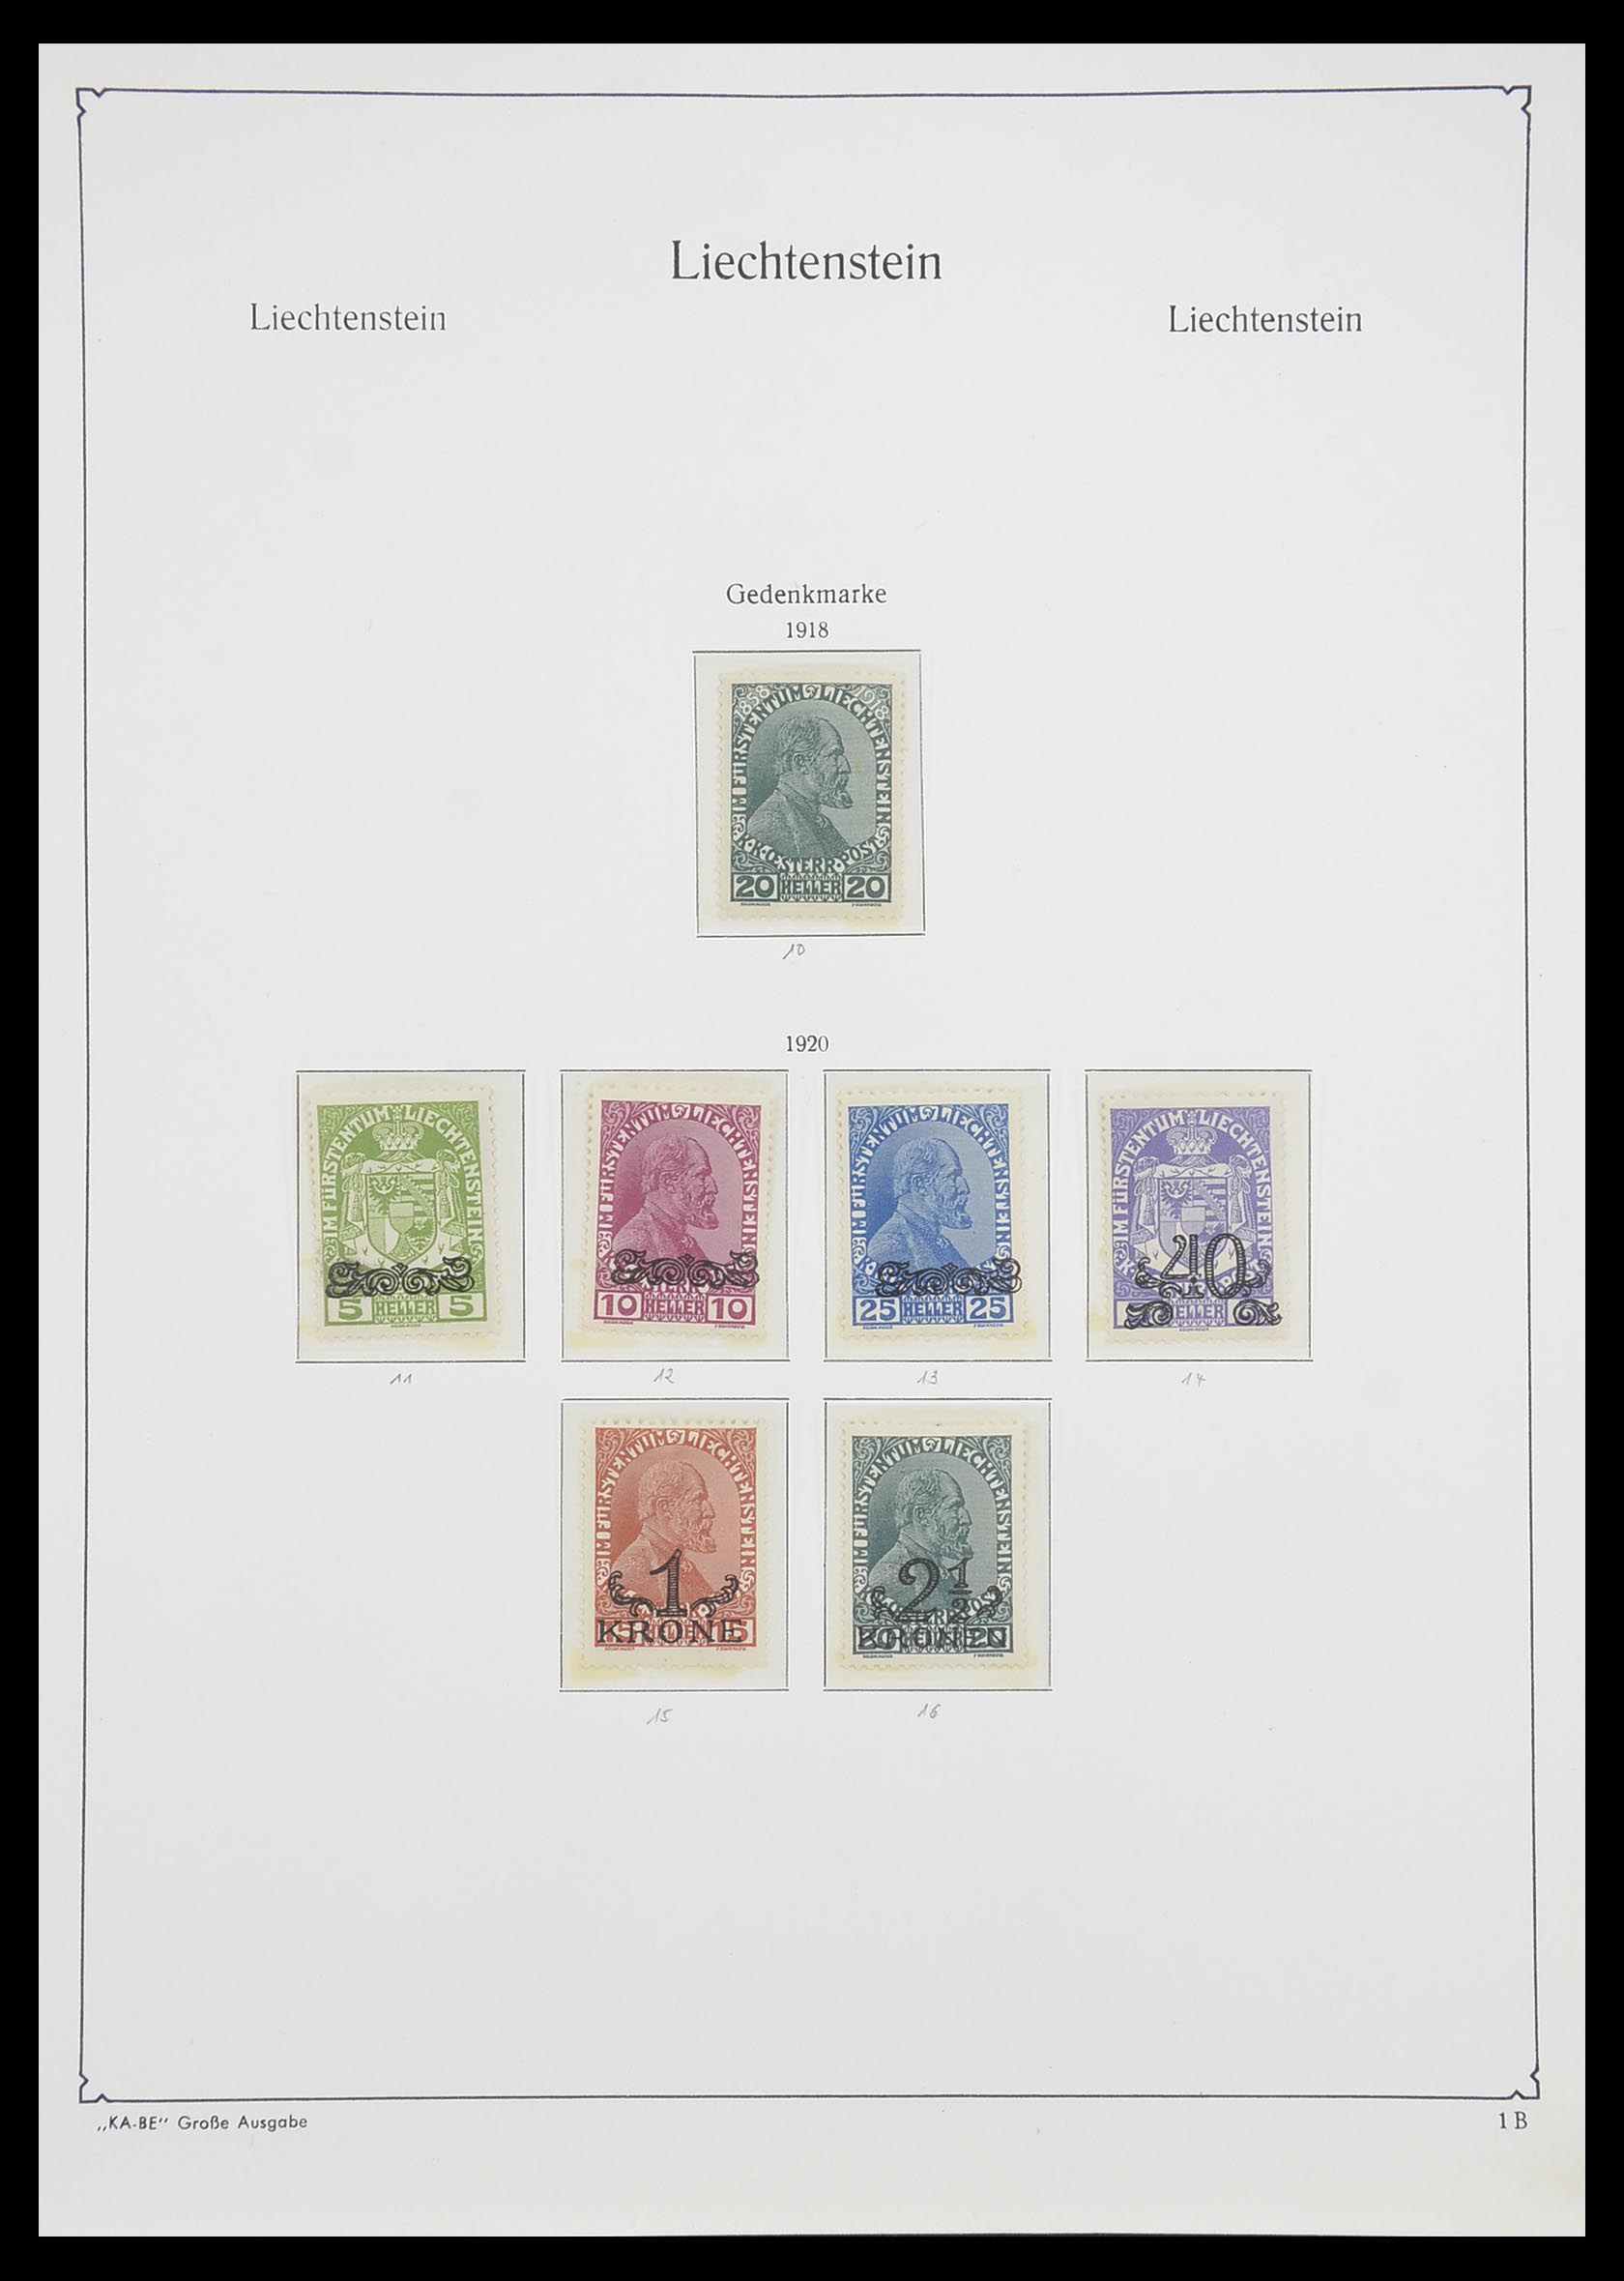 33493 003 - Stamp collection 33493 Liechtenstein 1912-2008.